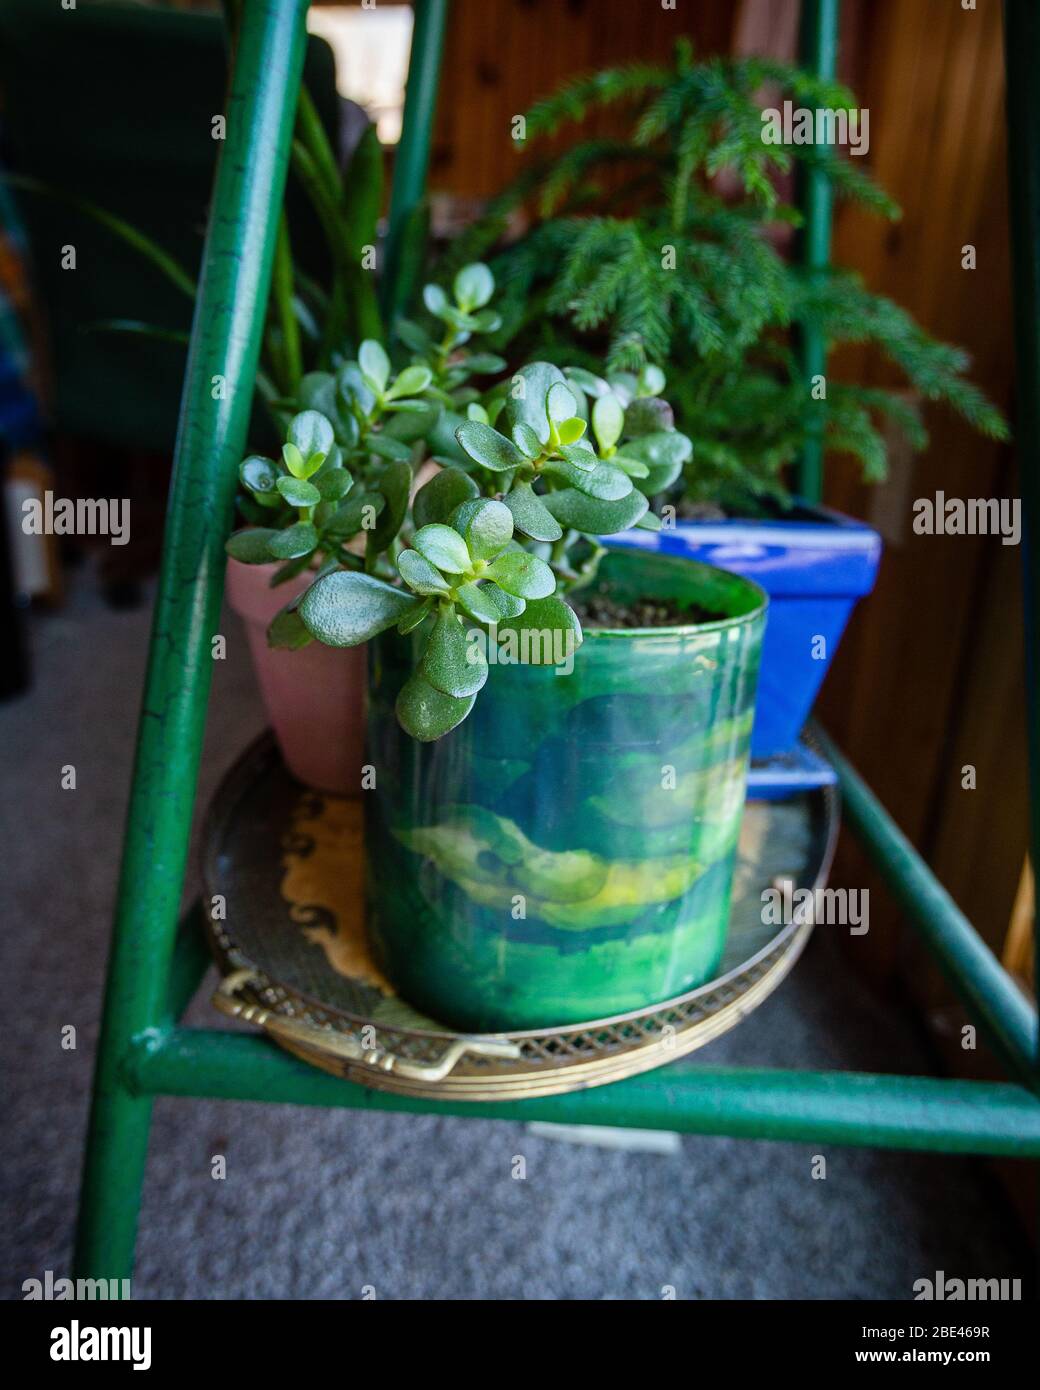 Grüne Zimmerpflanze in grün blau gelb Topf auf grünen Holzregal vor einem blauen Topf in einem Raum mit Holzwänden Stockfoto